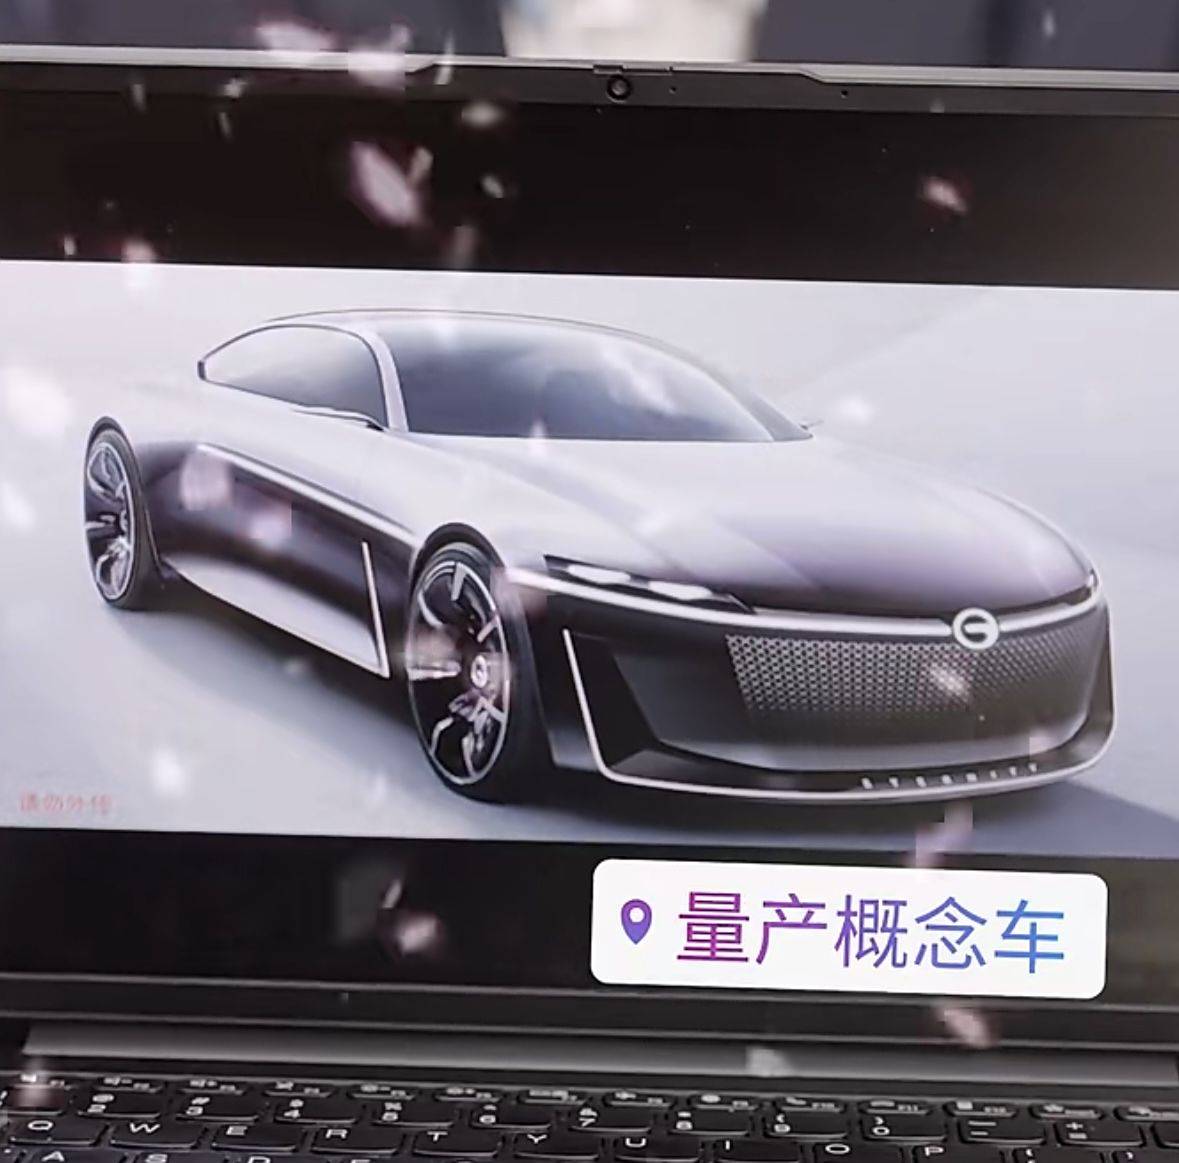 量产版将于2025年第一季度推出并交付广汽传祺和华为首款概念车设计曝光_搜狐汽车_ Sohu.com。